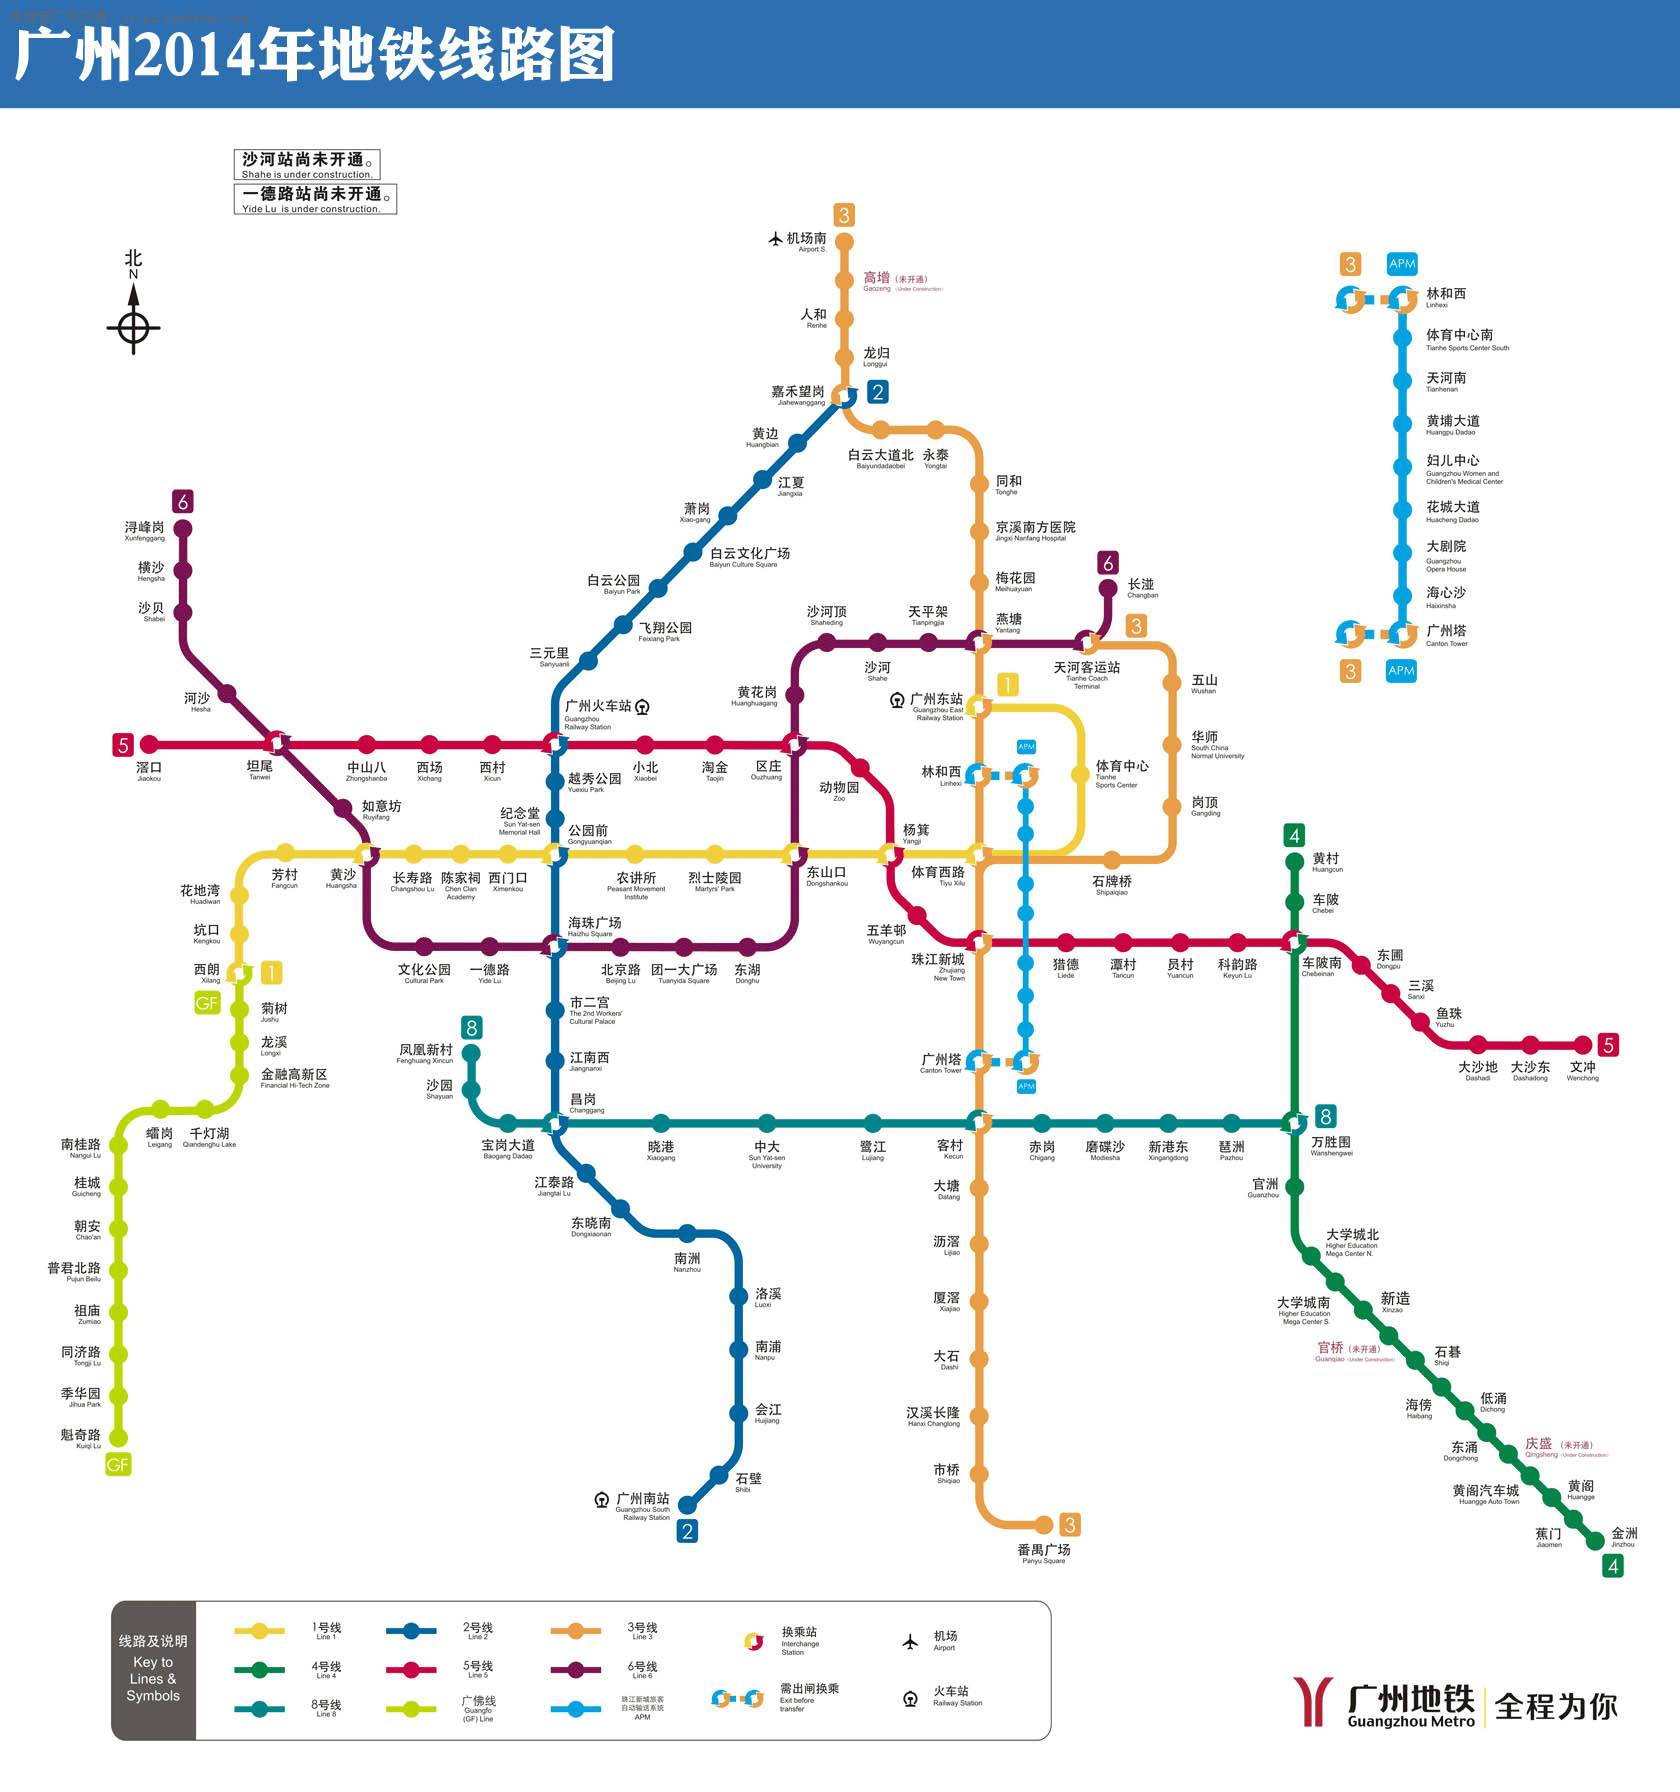 广州地铁线路图新版 - 广州地铁图 - 广州地铁线路